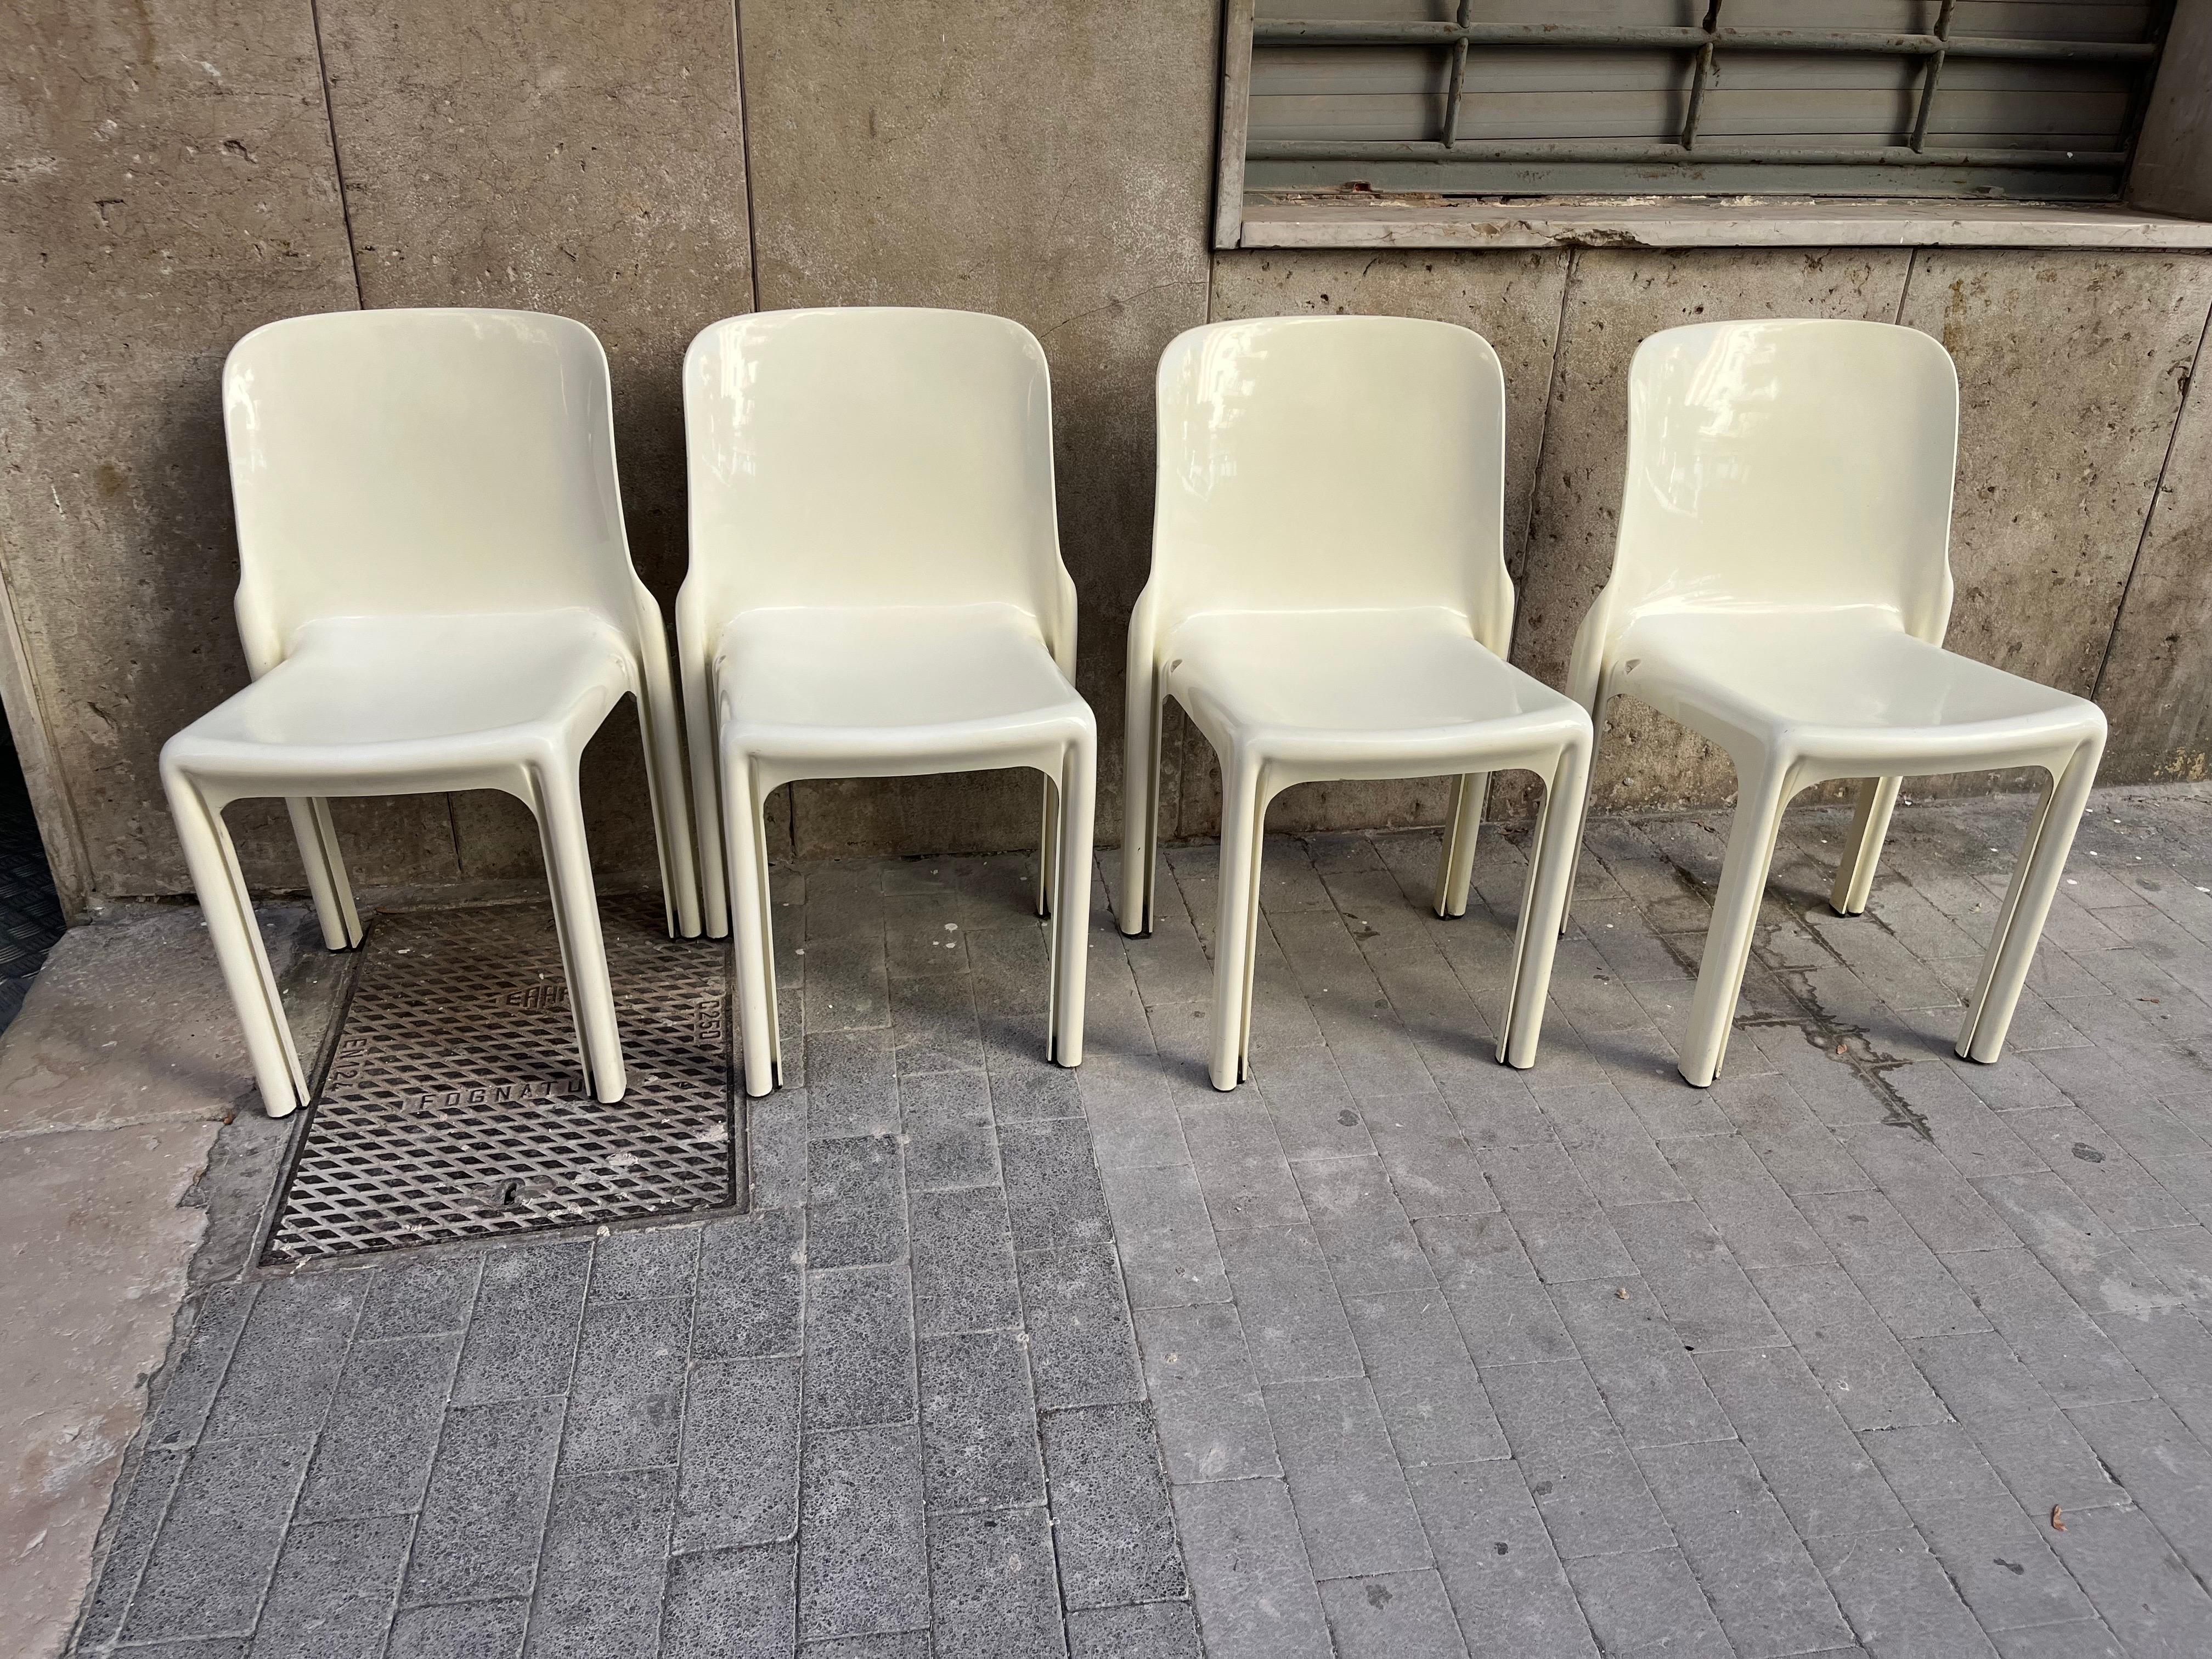 Questo set di quattro sedie Selene è di colore bianco. È un bellissimo set di quattro sedie impilabili. Il peso di ogni sedia è di 4,5 kg.

Le quattro sedie impilate misurano 93 cm H x 47 L x 62 cm P.